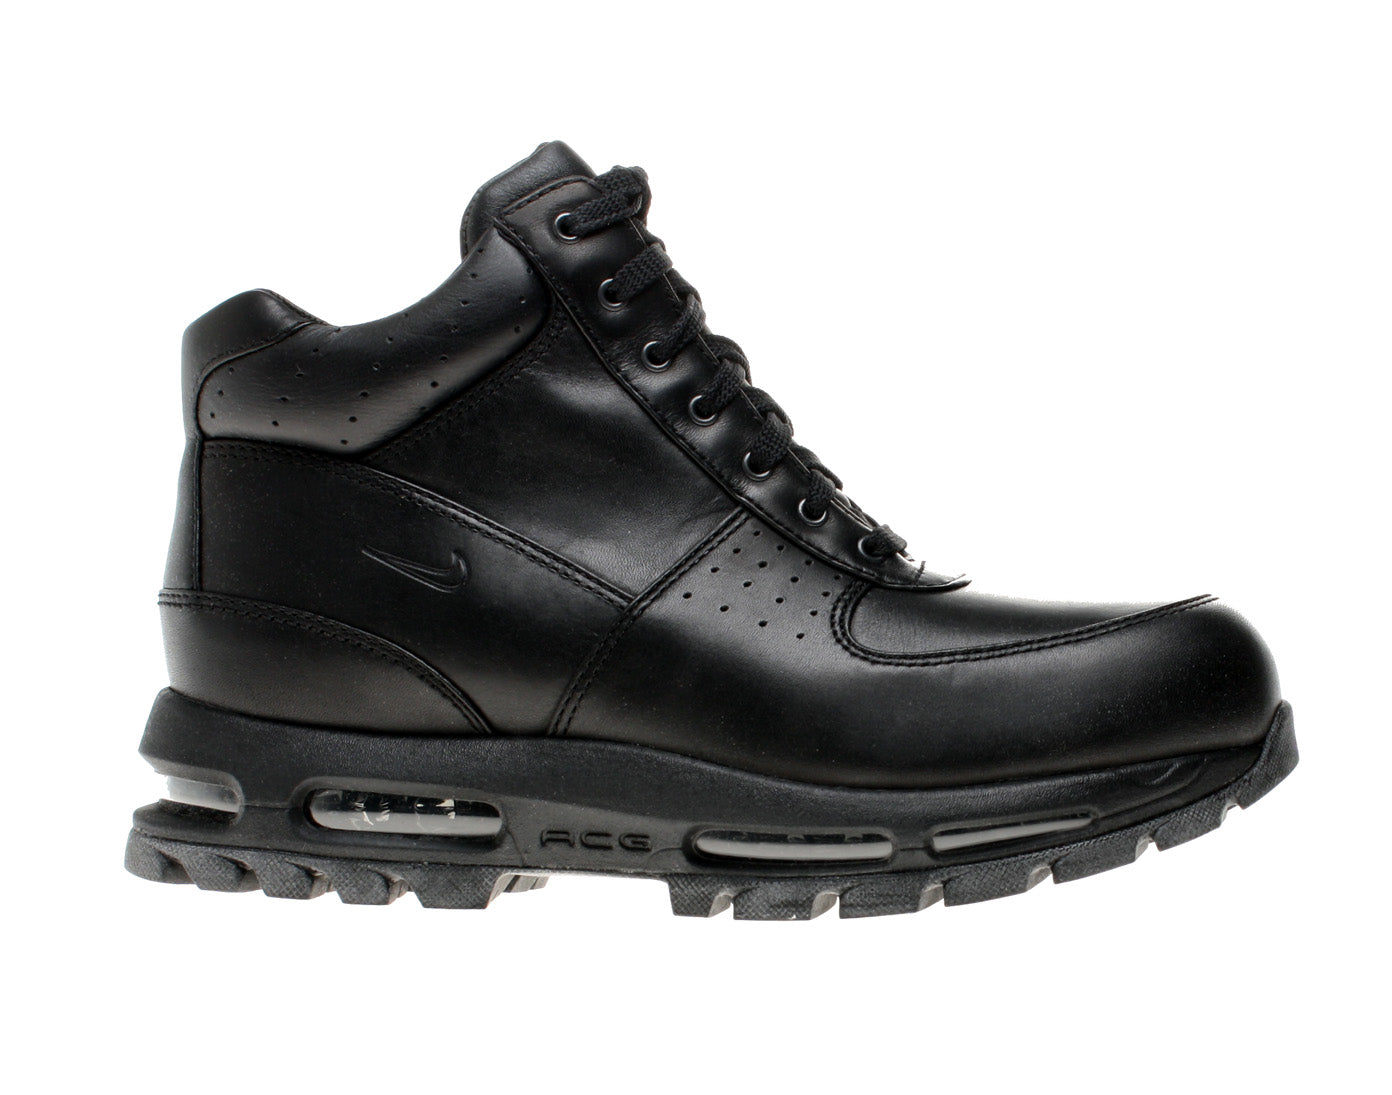 Nike Air Max Goadome ACG Black/Black Men's Boots 865031-009